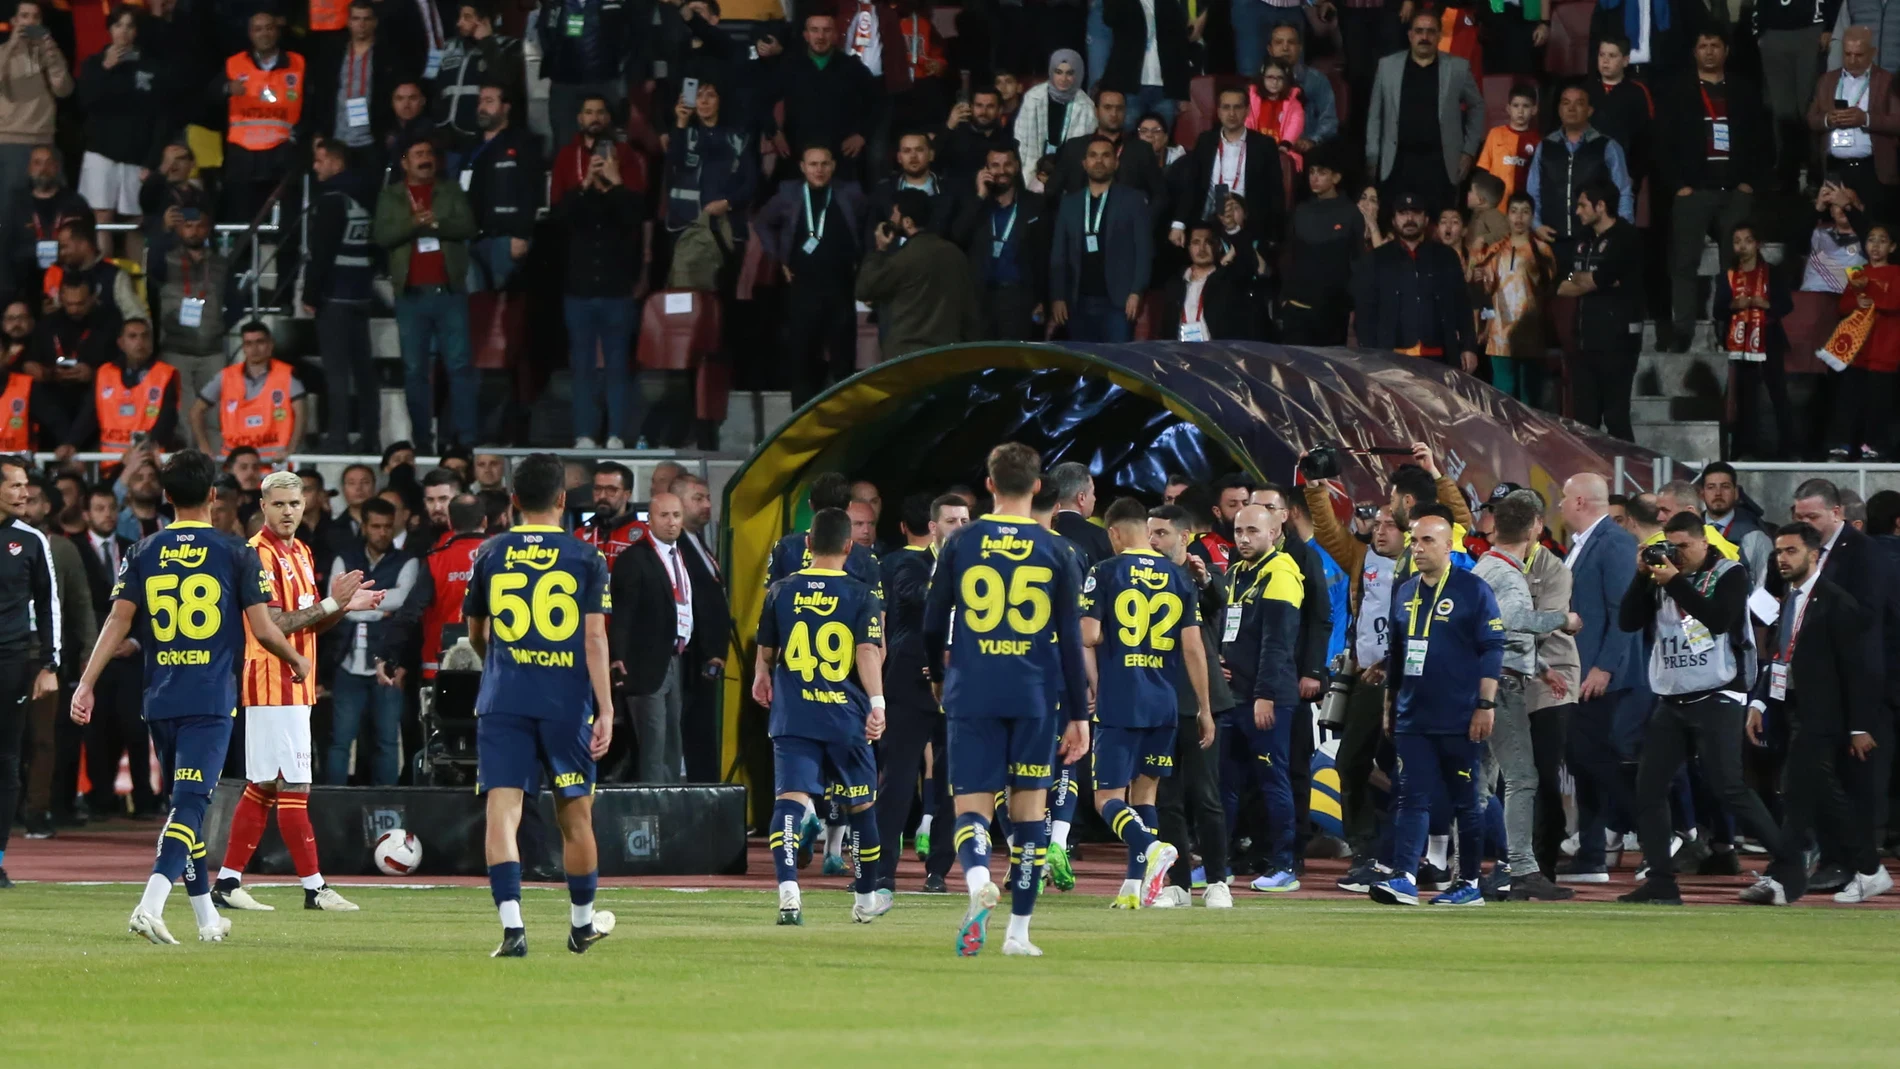 Los jugadores sub-19 del Fenerbahçe se retiran de la Supercopa turca en el minuto 1